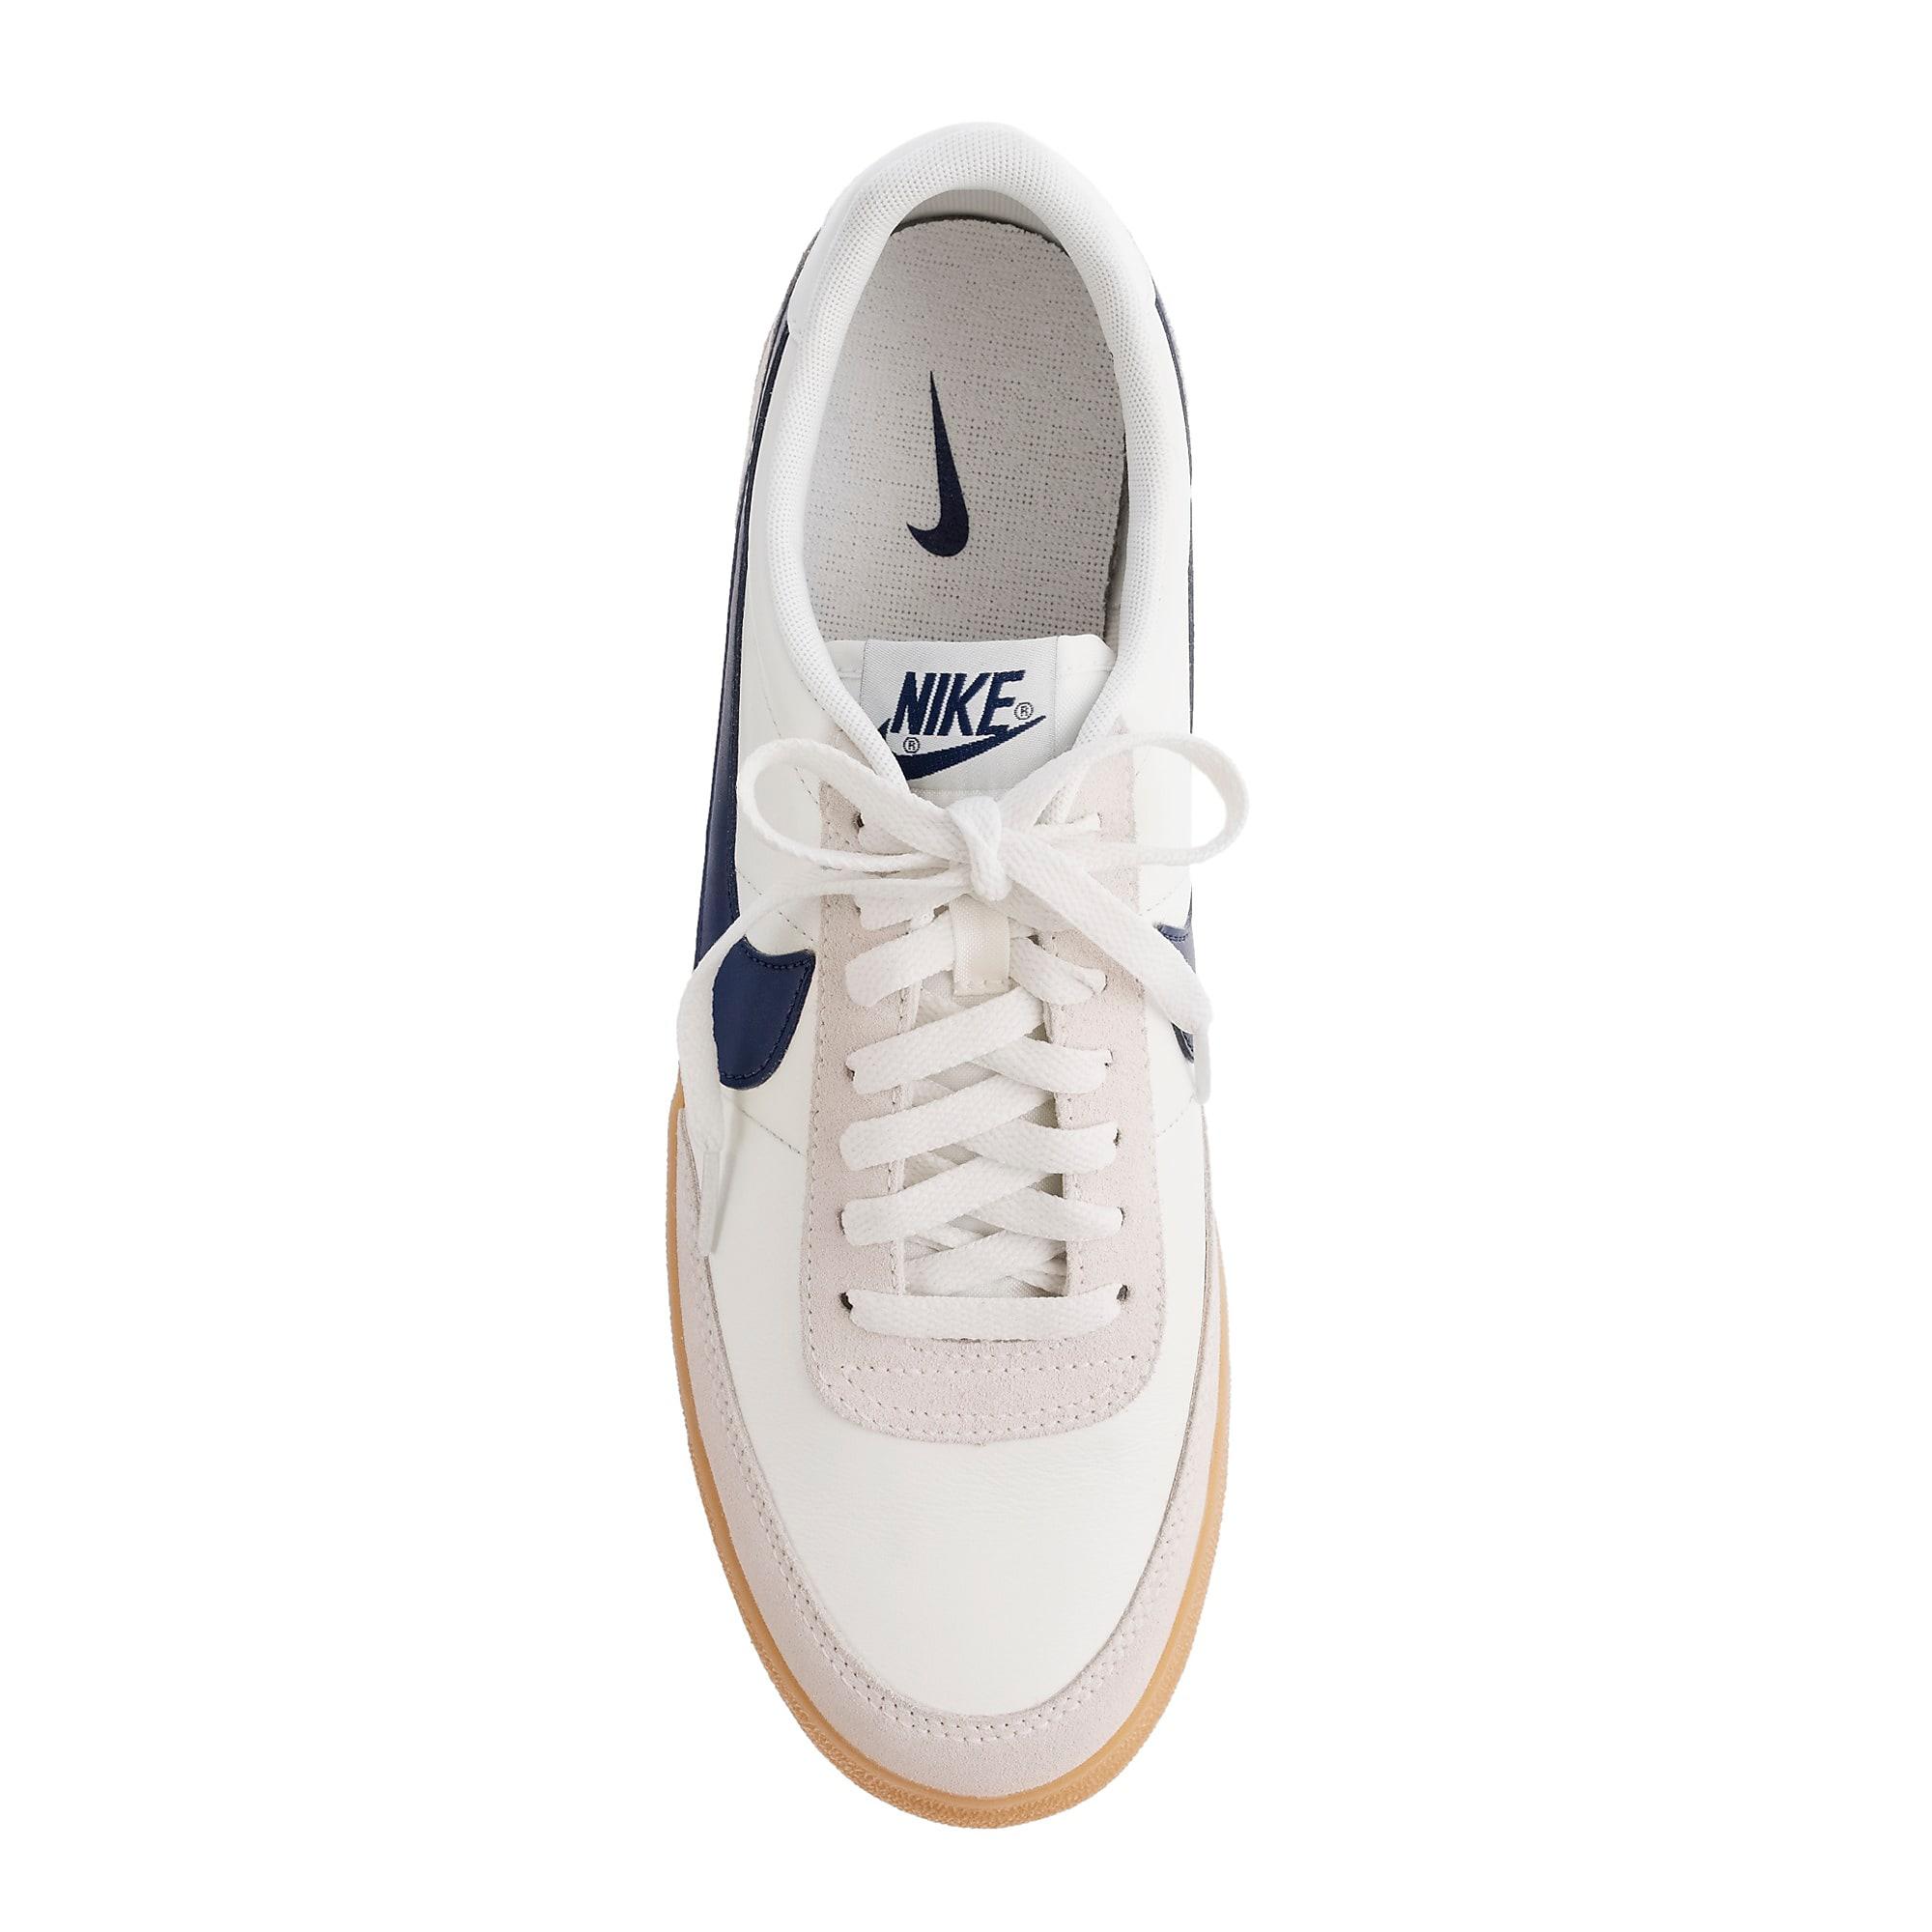 Lyst - Nike Killshot 2 Sneakers in White for Men